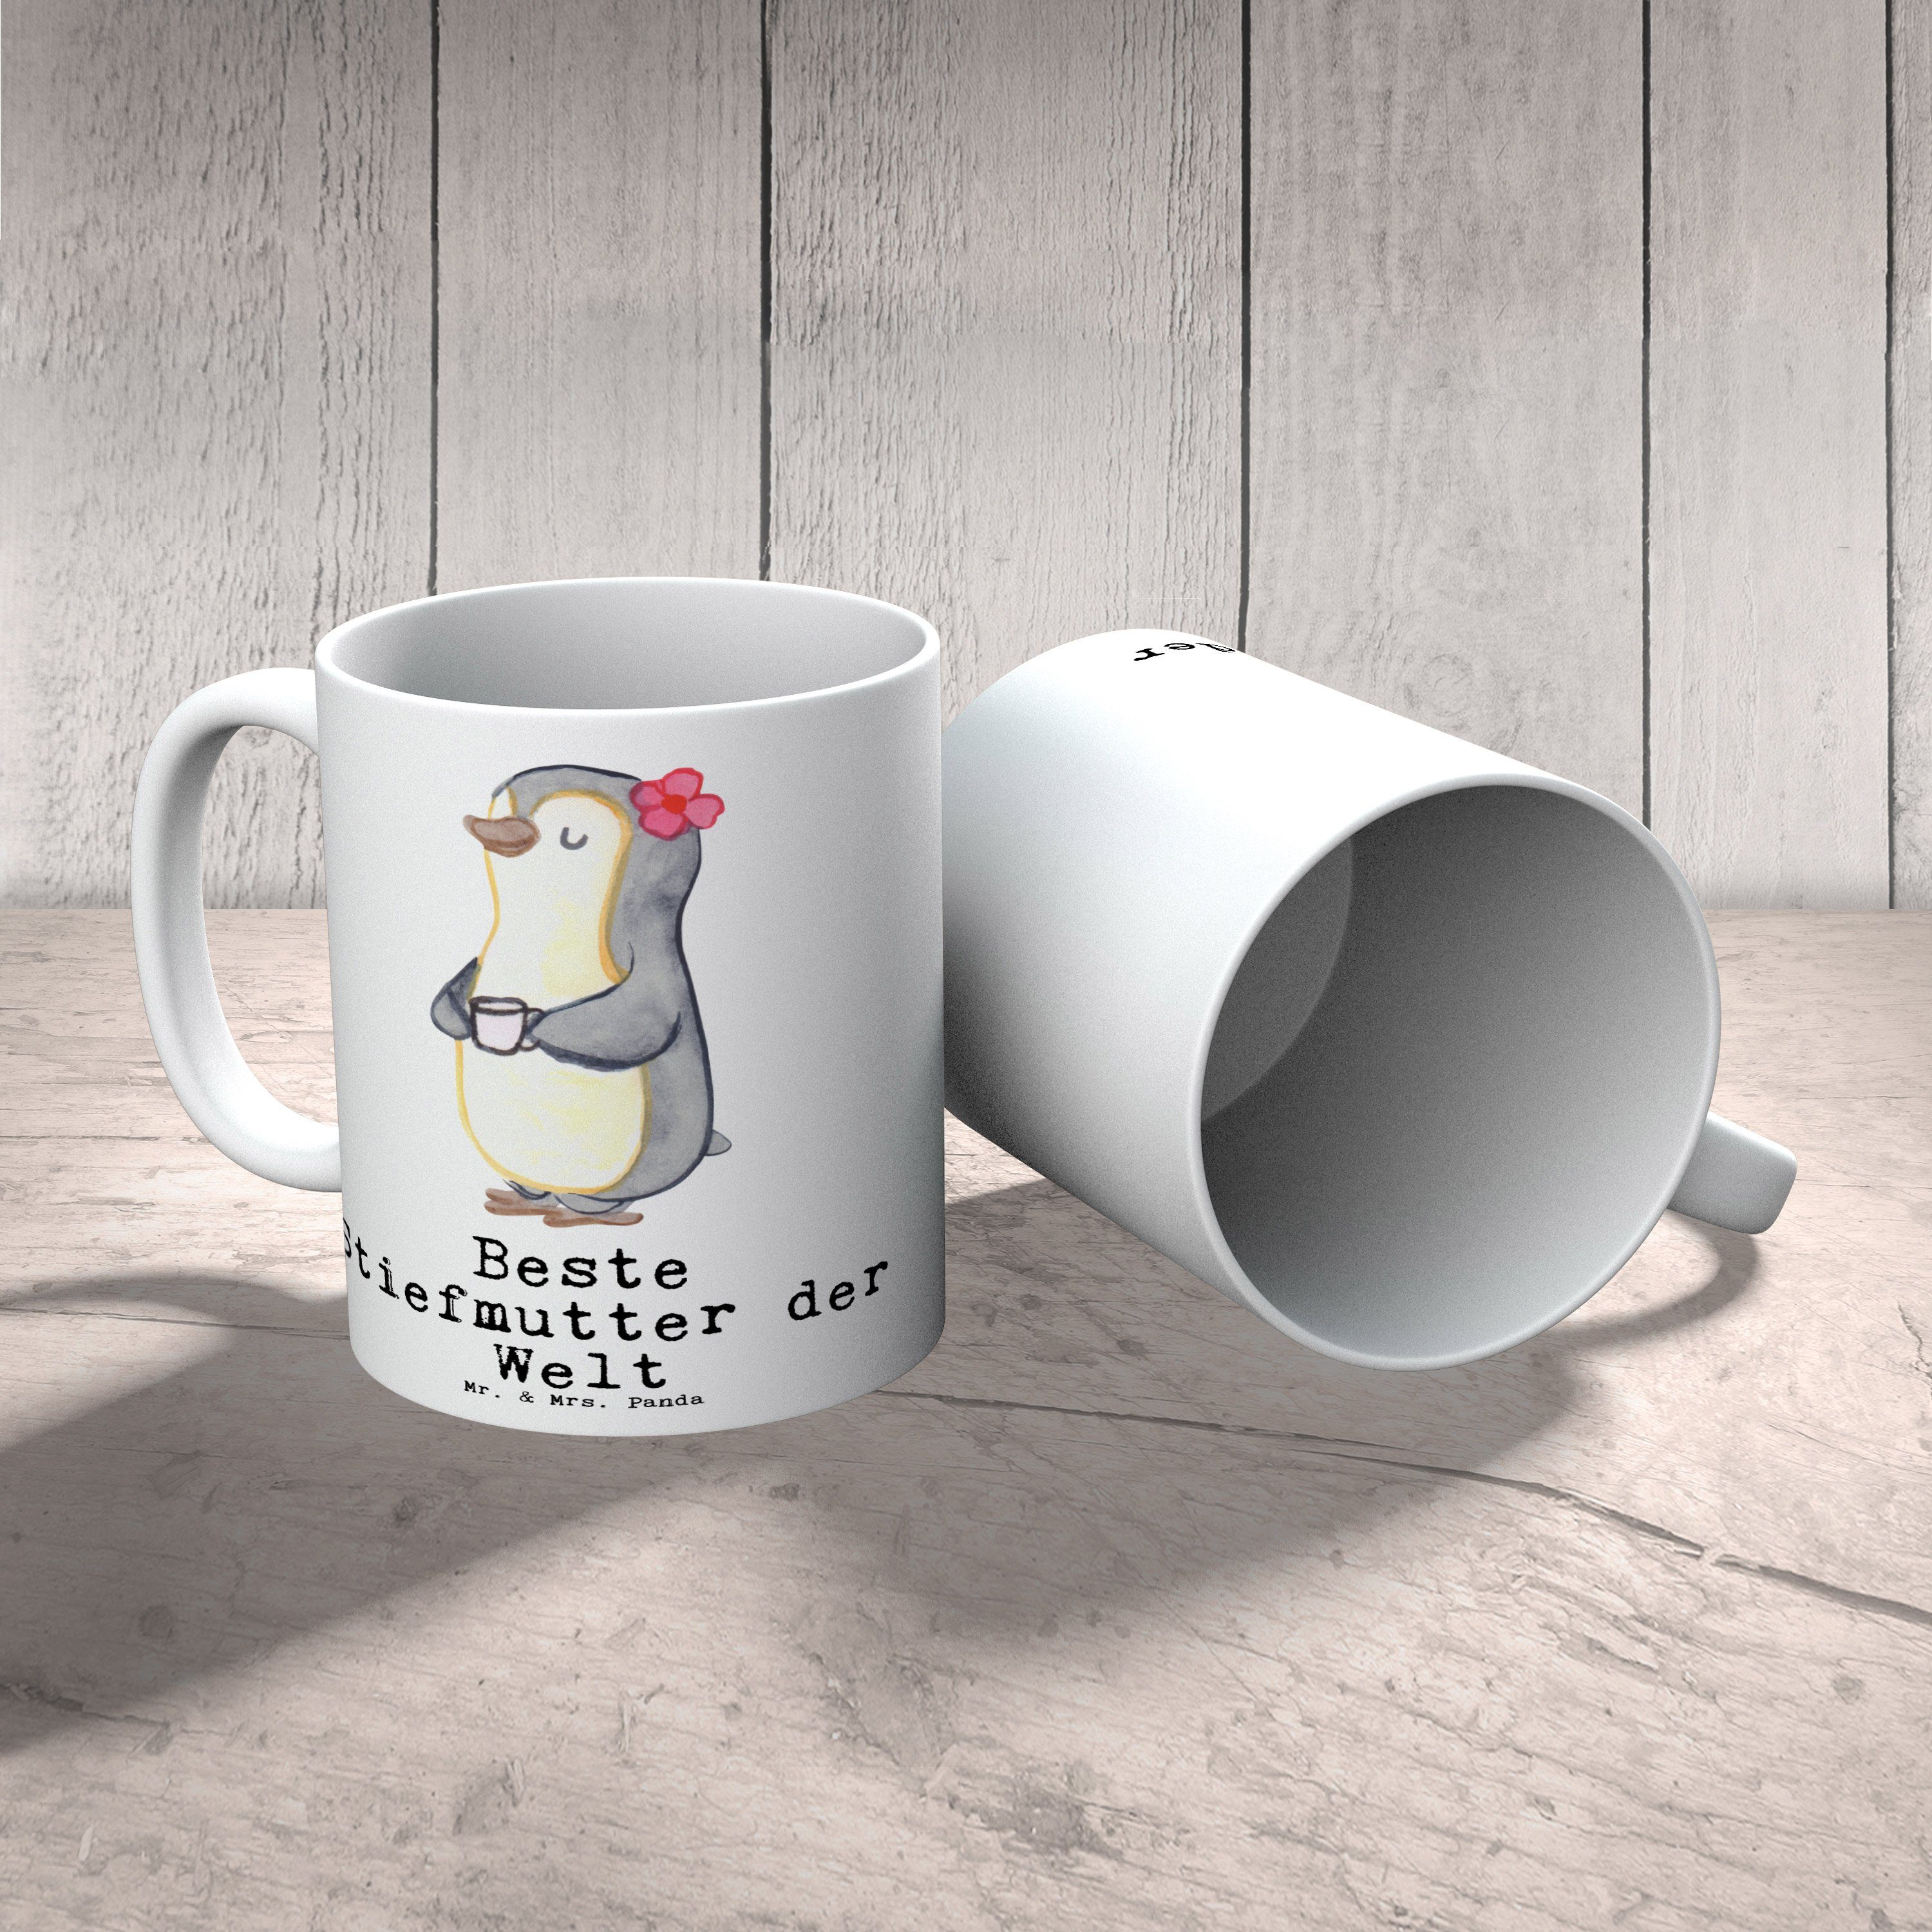 Mr. & Mrs. Panda Pinguin - Weiß Tasse Sohn, Kaffeebecher, Stiefmutter Welt Stief machen, - Danke, Freude für, Bedanken, Beste Becher, der Keramik Geschenk, Dankeschön, Tee, Mutter